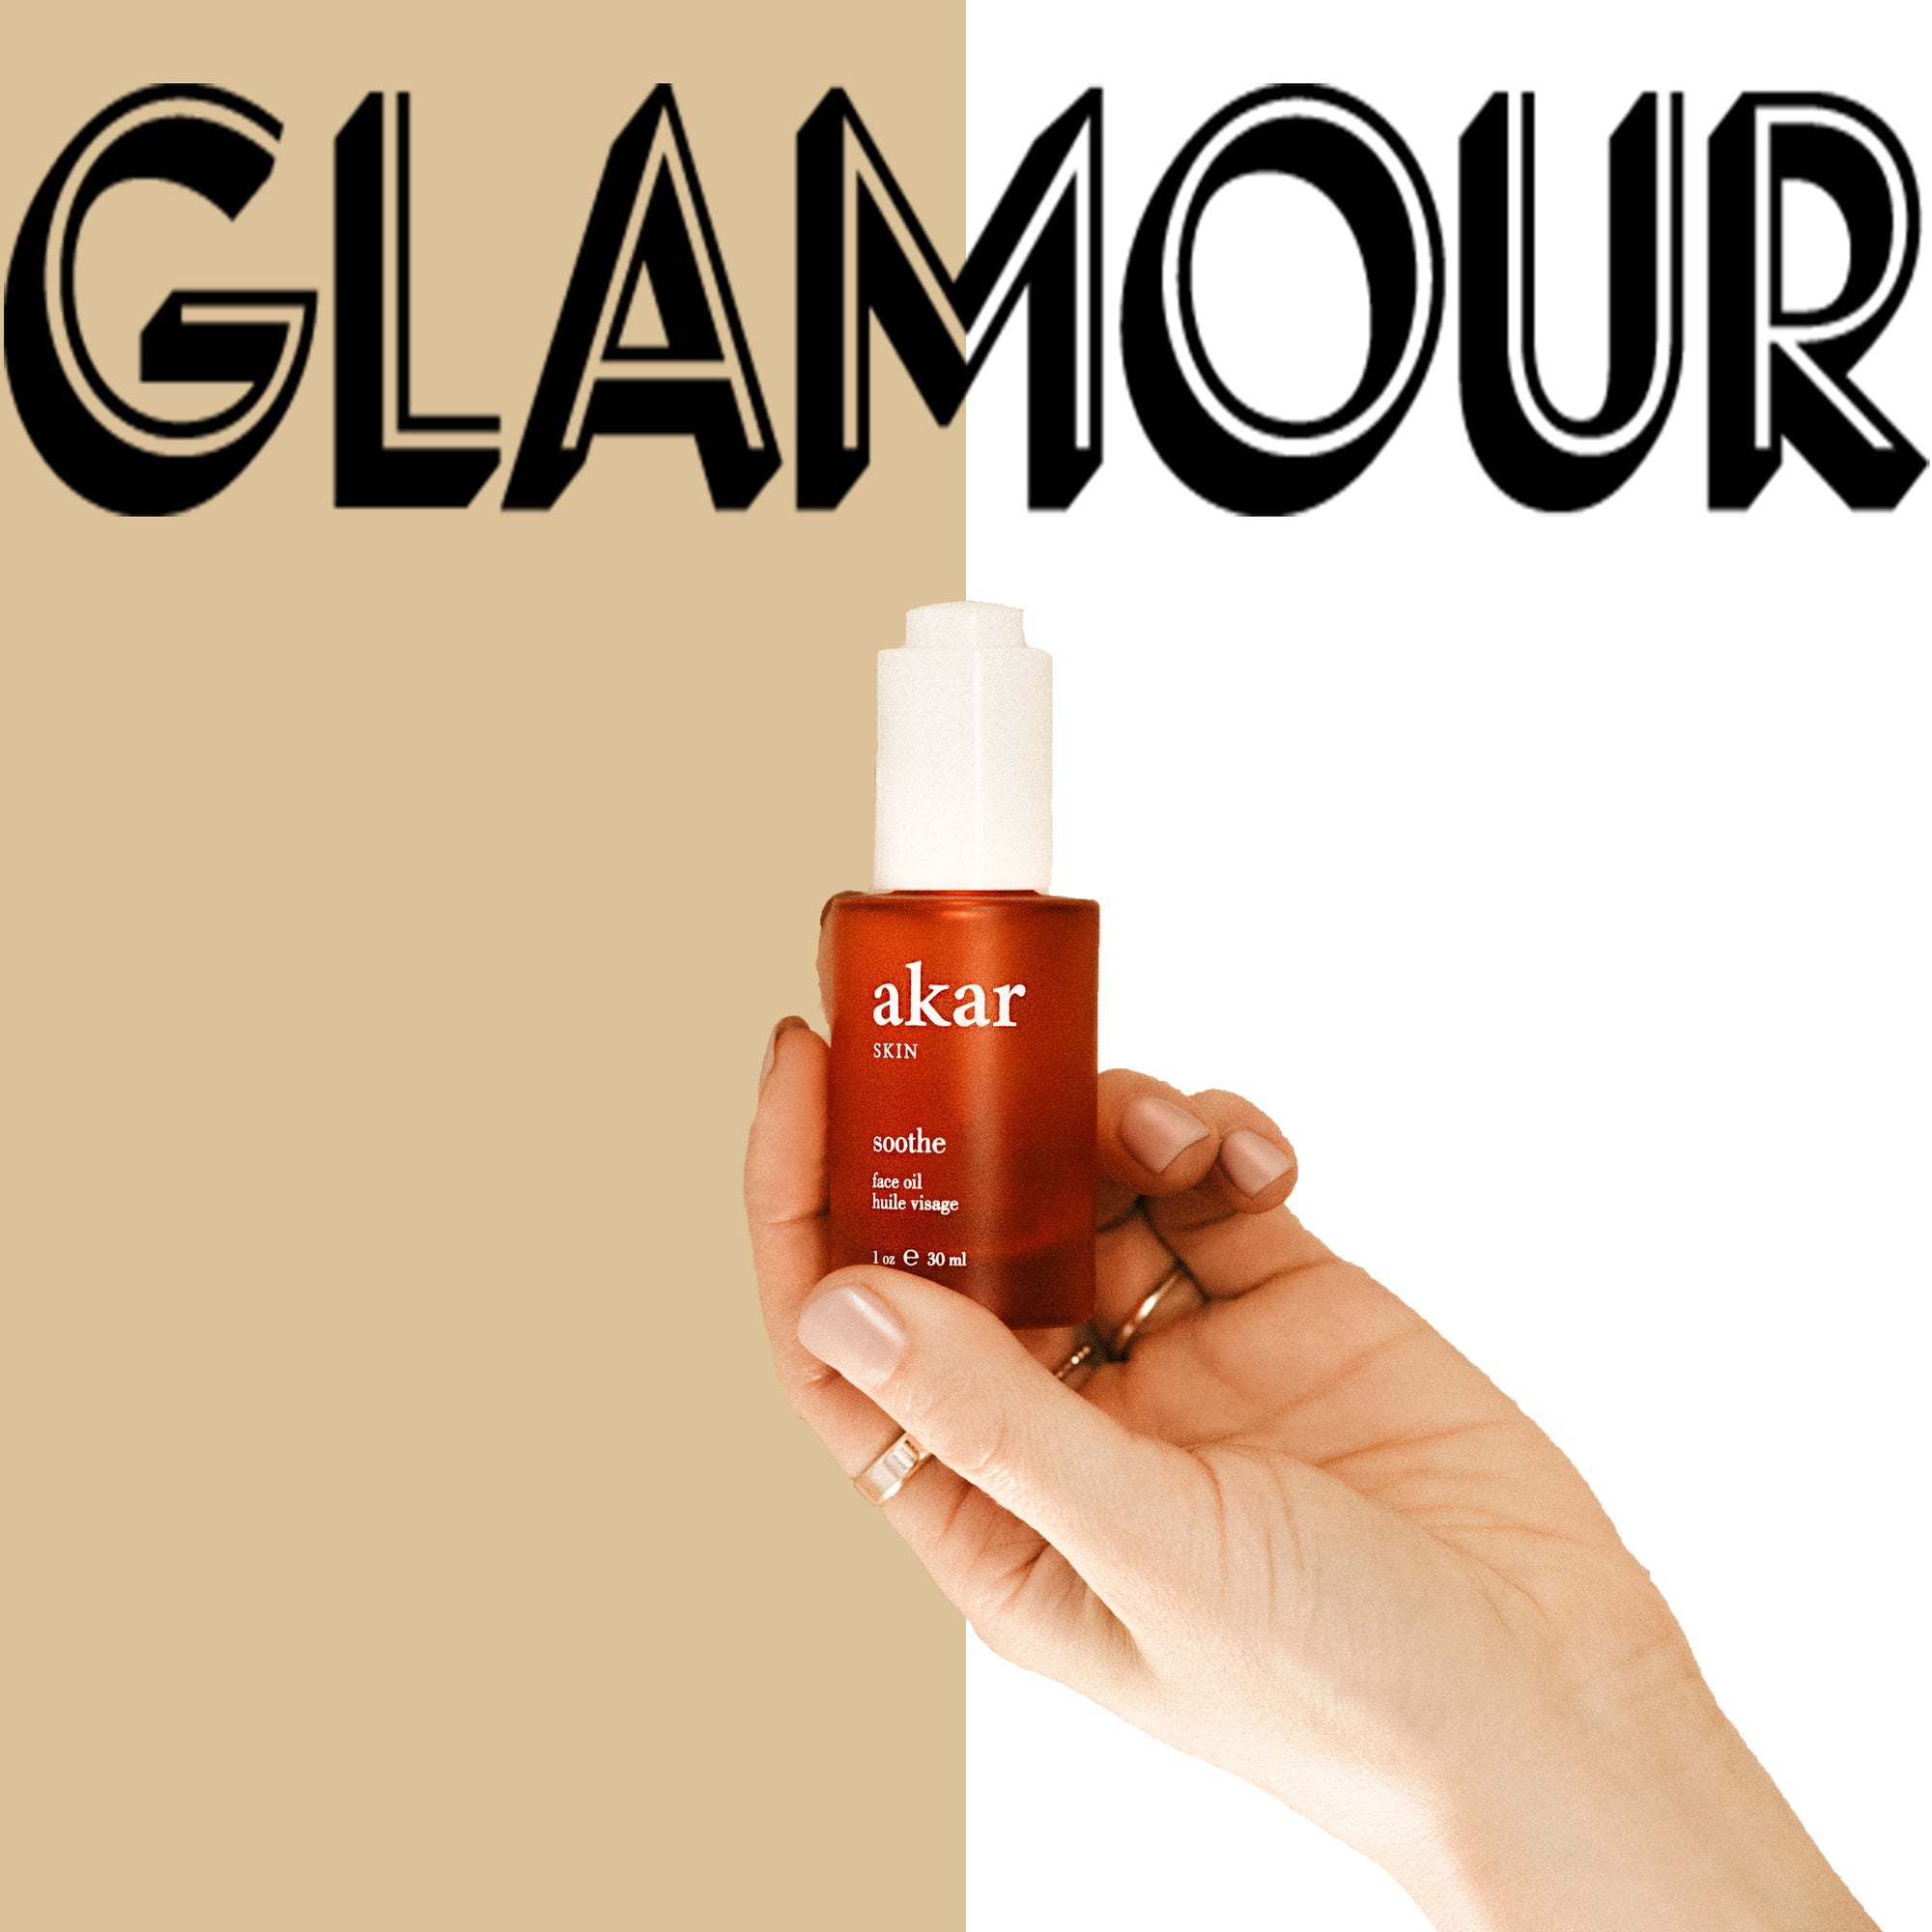 Glamour, soothe, face oil, hand, akar